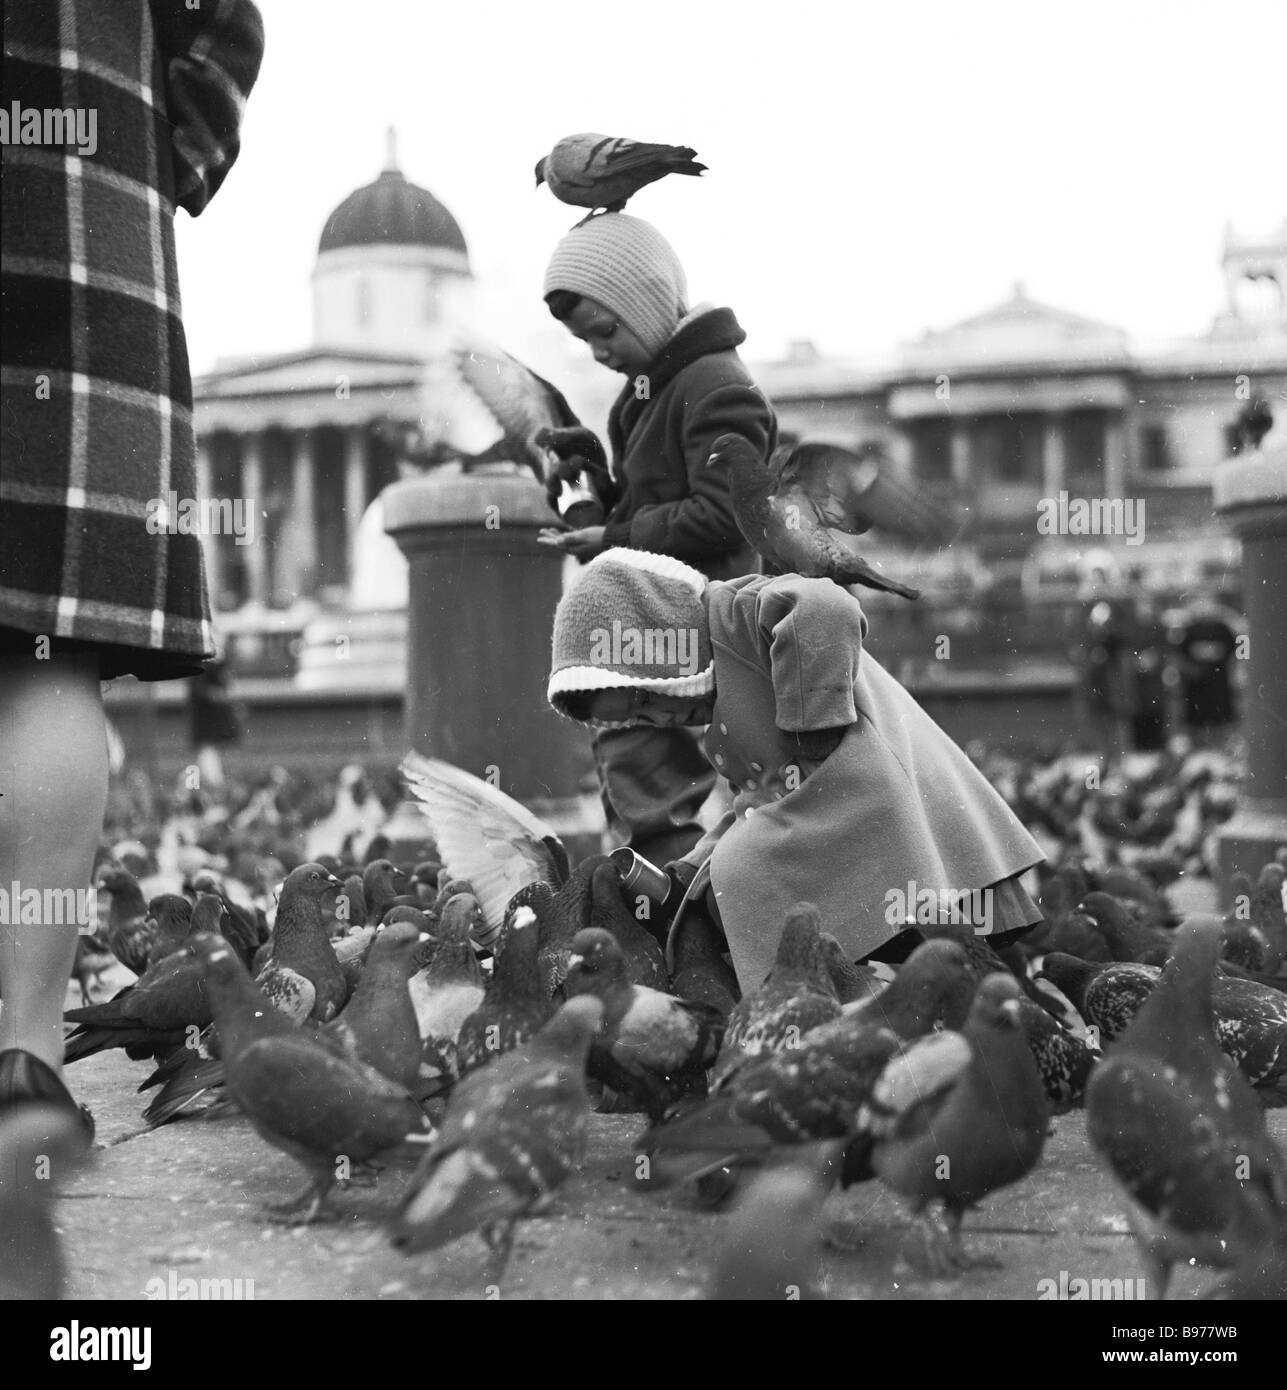 In den 1950er Jahren umgeben Tauben zwei kleine Kinder am Trafalgar Square, London, England. Eine Taube sitzt auf dem Kopf eines Kindes, während sie sie mit getrockneten Erbsen füttern. Stockfoto